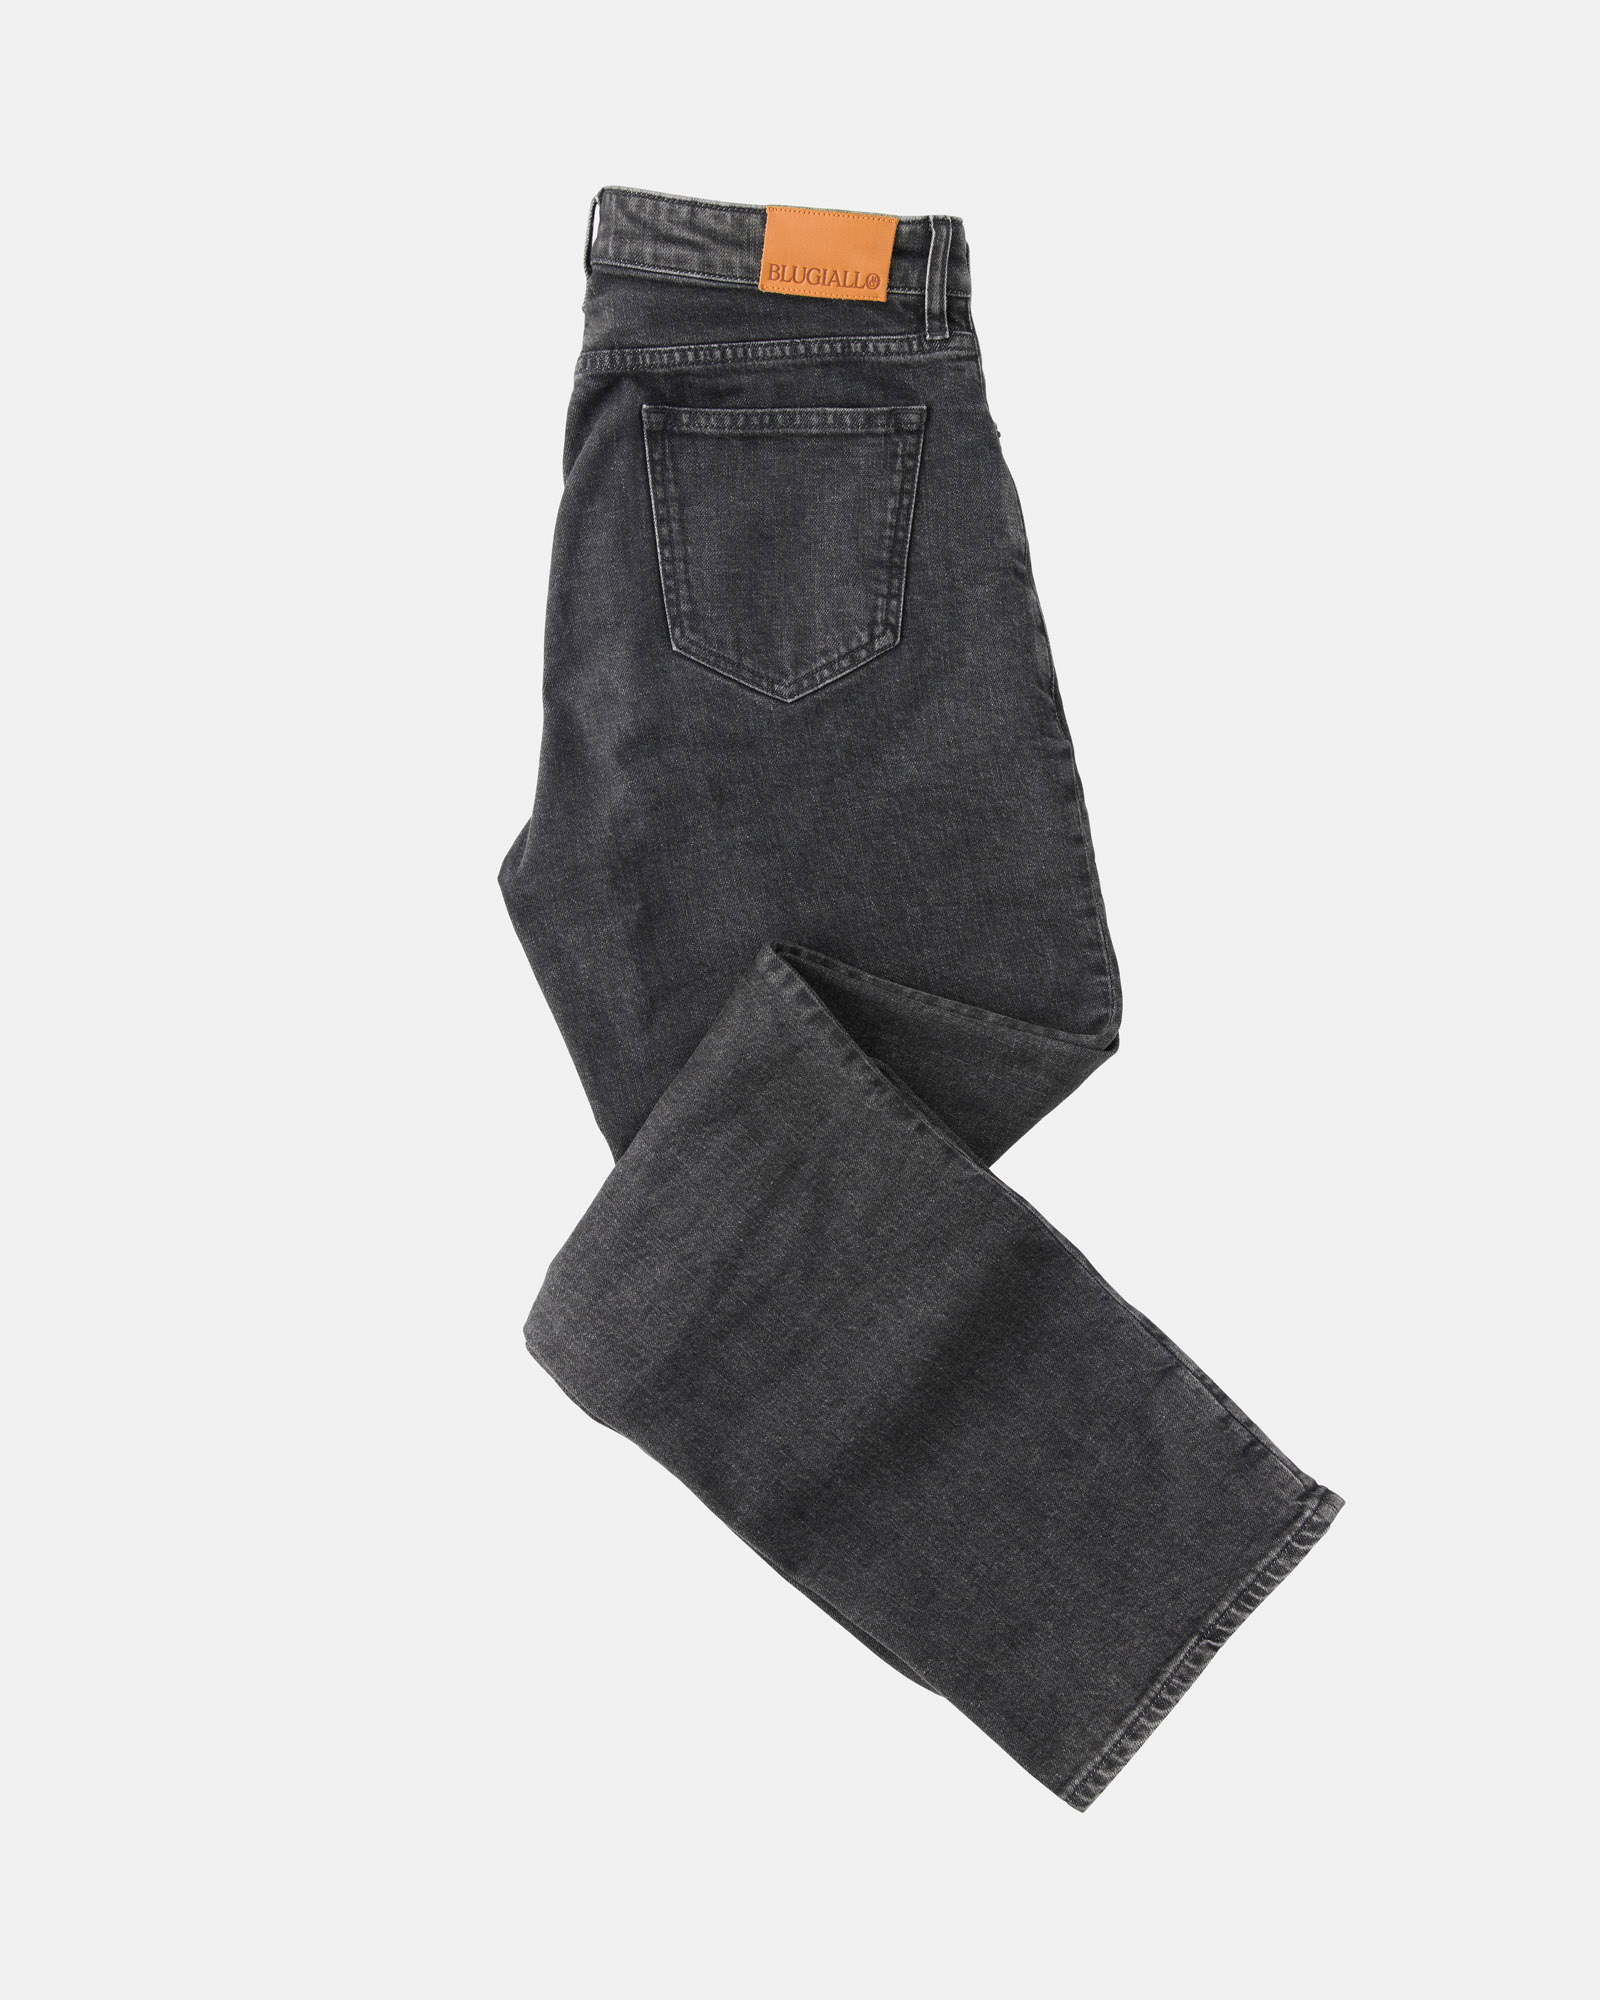 Custom tailored denim jeans - Blugiallo - Tailoring reinvented